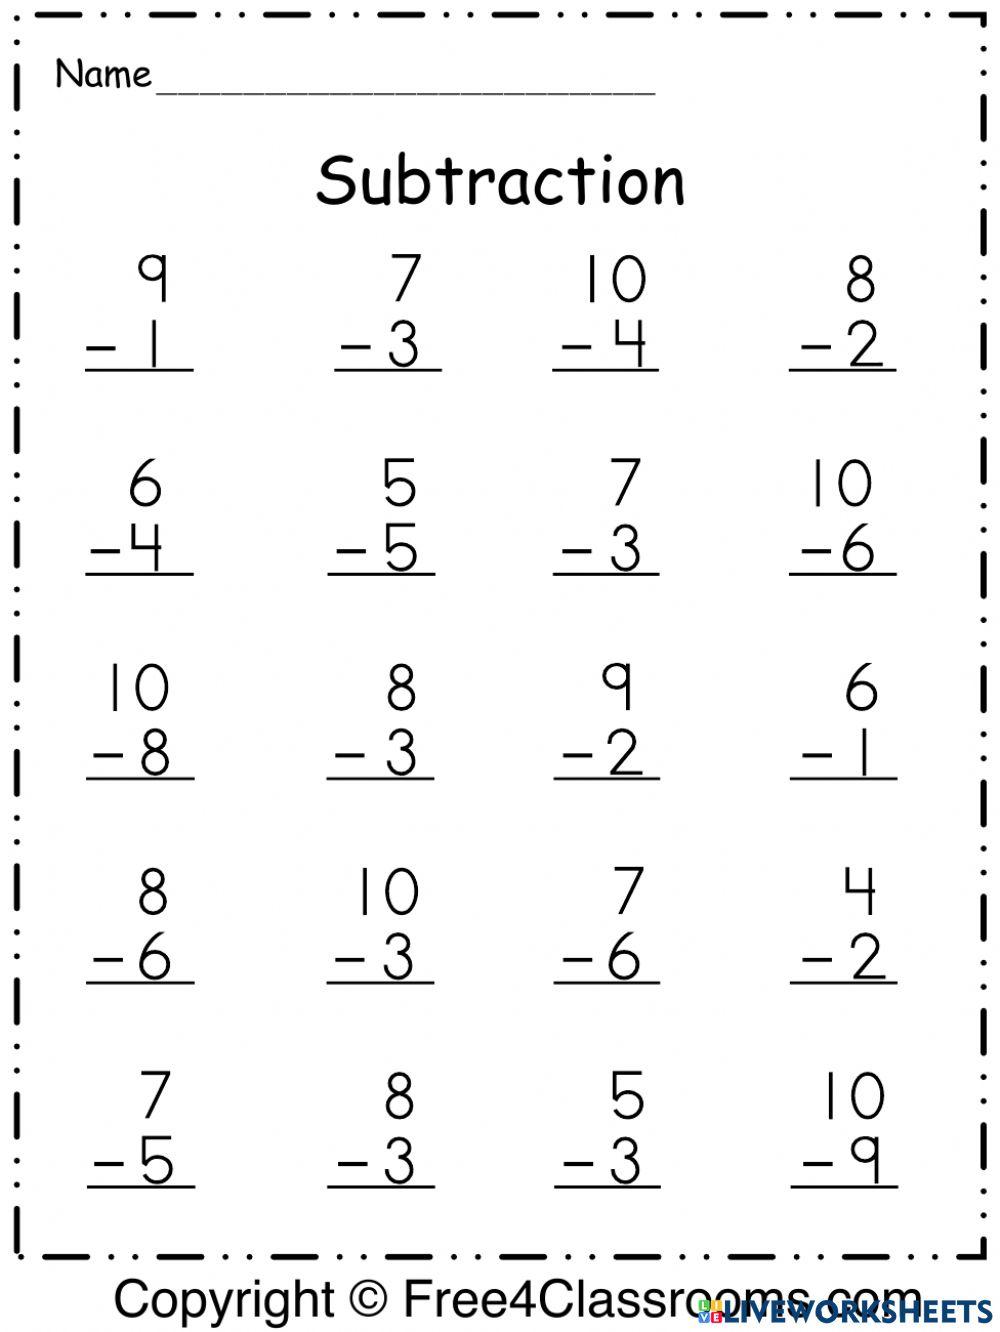 Single digit subtraction